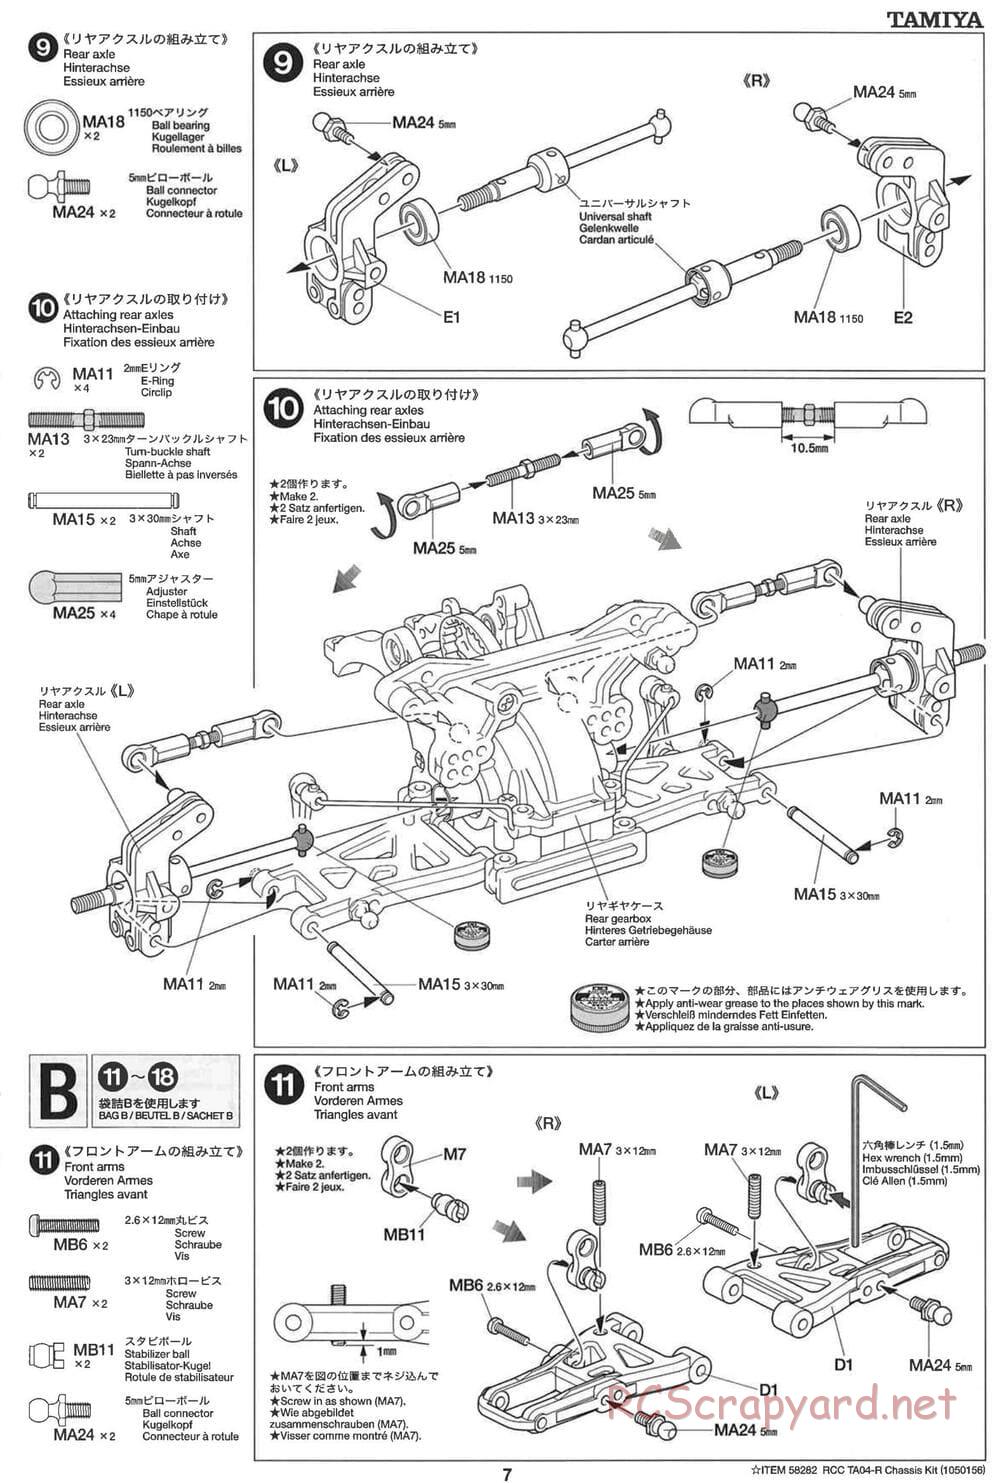 Tamiya - TA-04R Chassis - Manual - Page 7